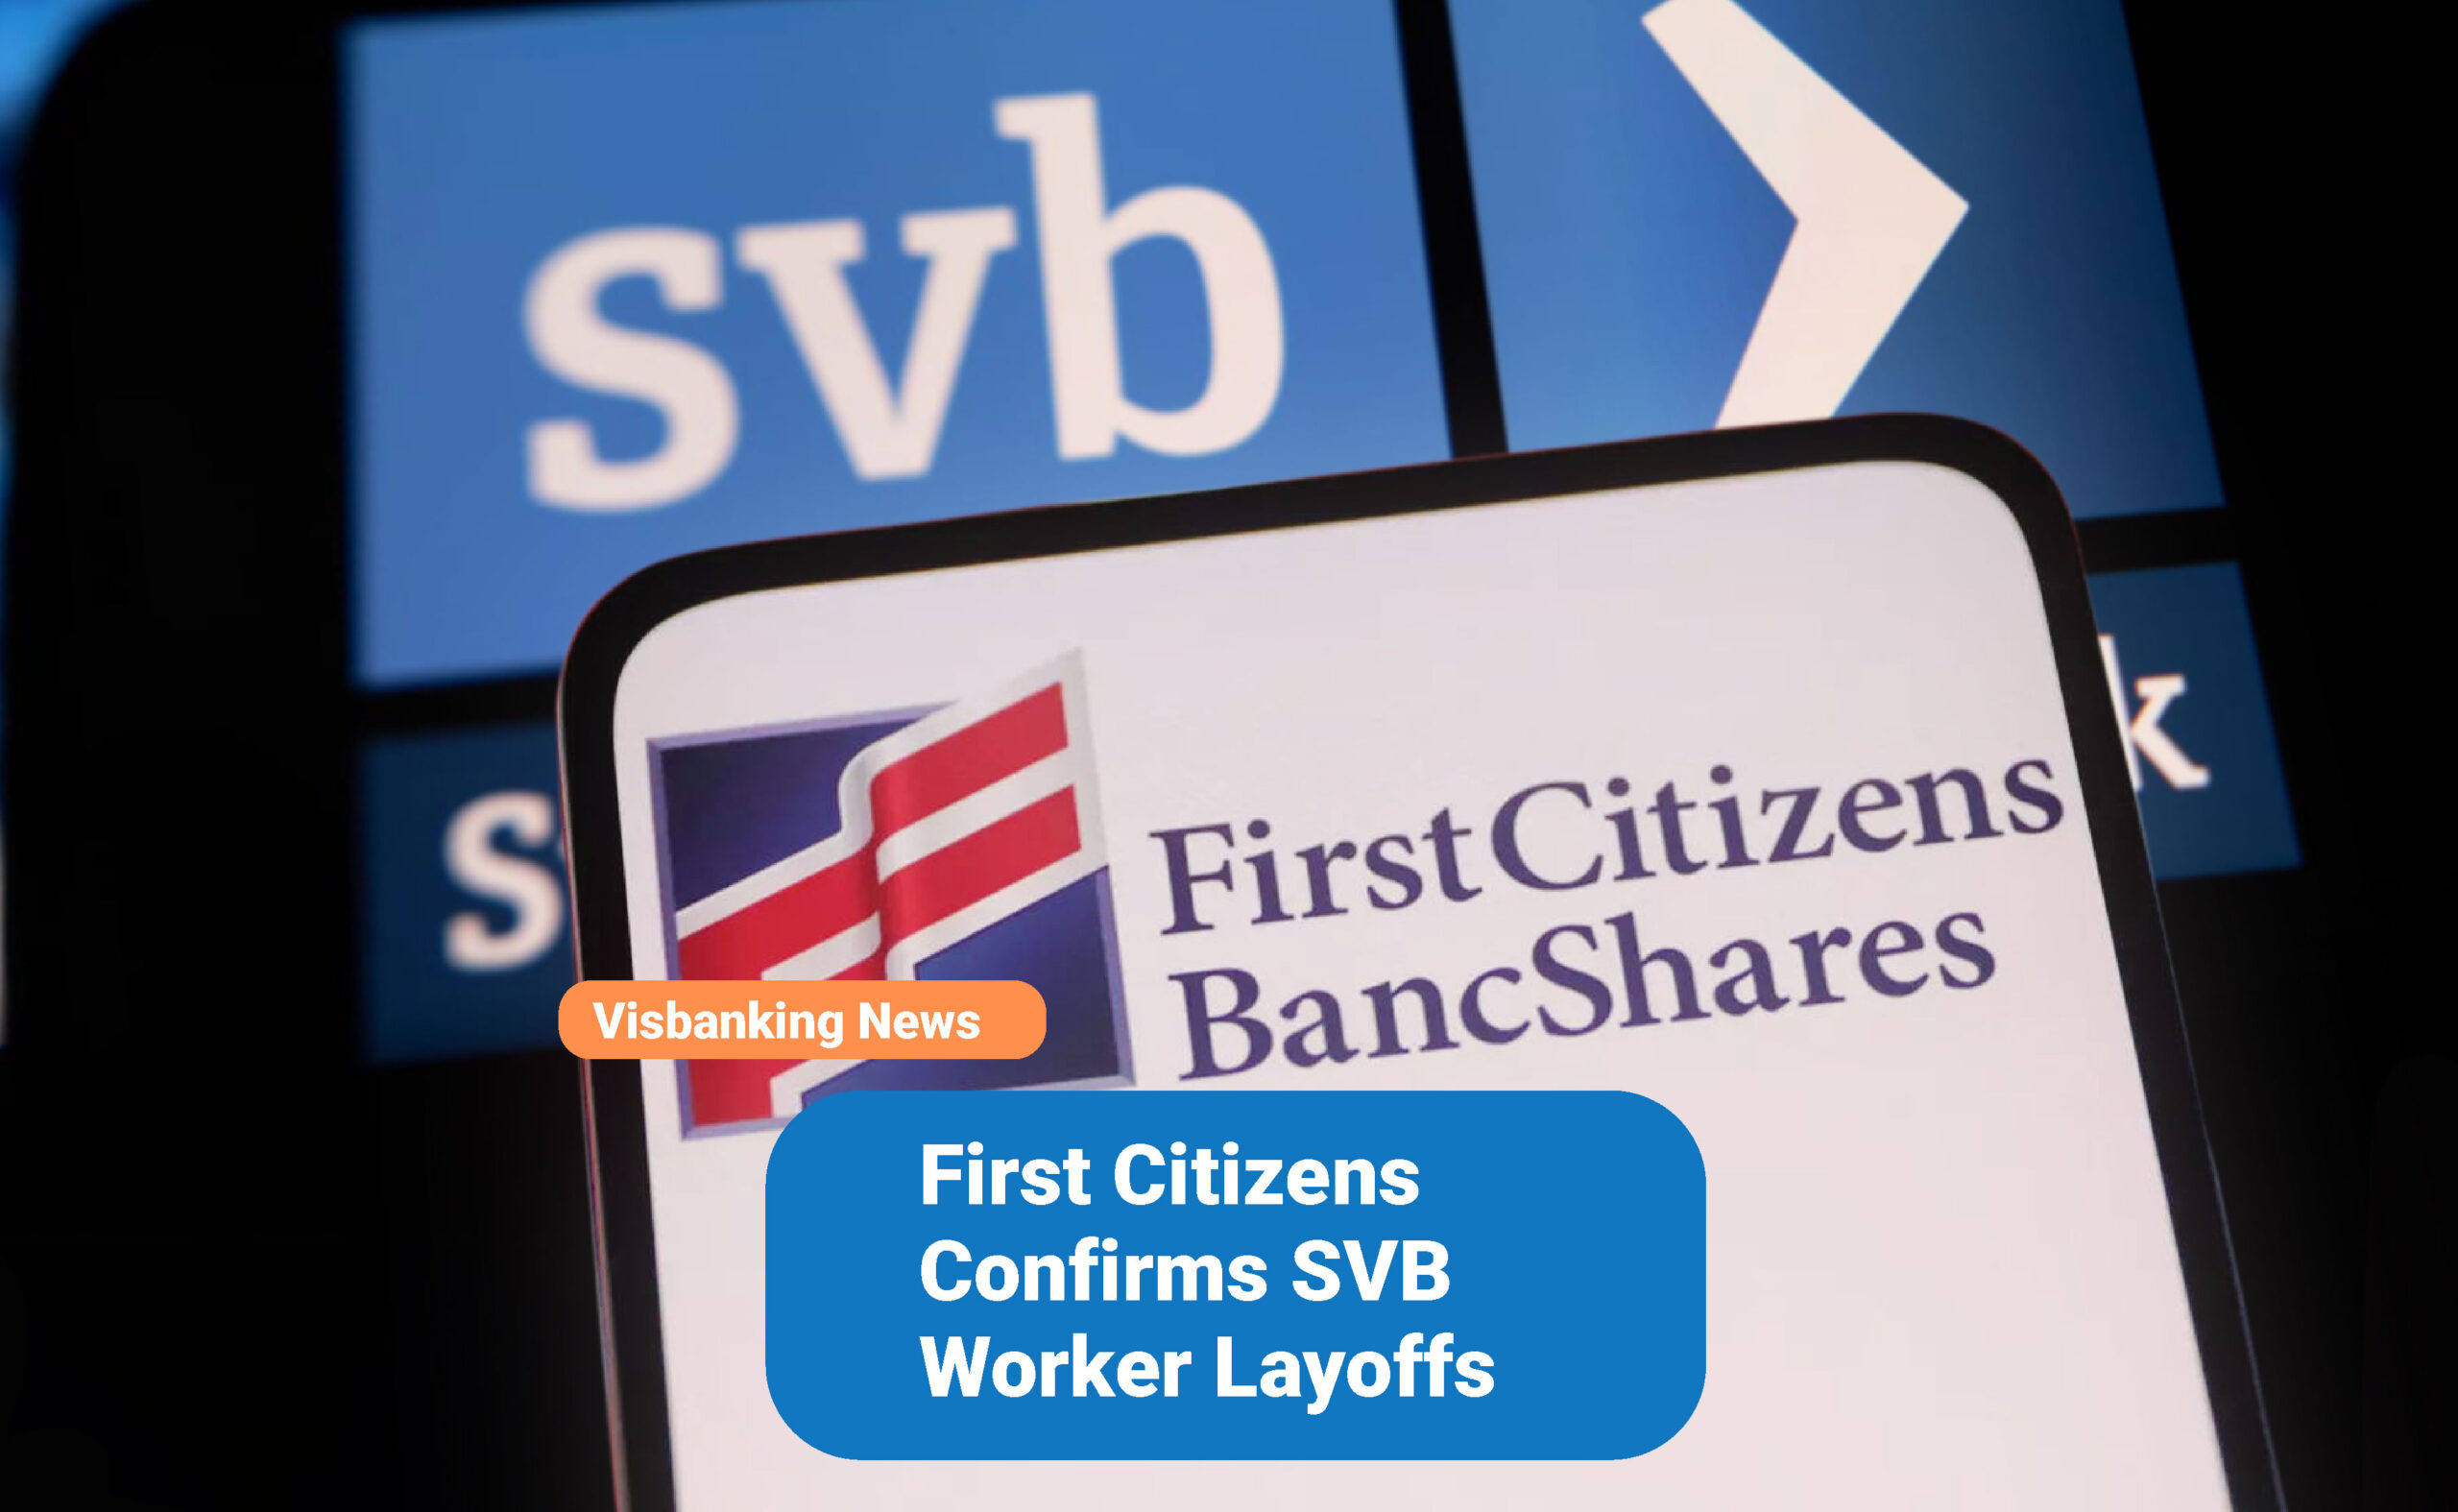 First Citizens Confirms SVB Worker Layoffs Visbanking